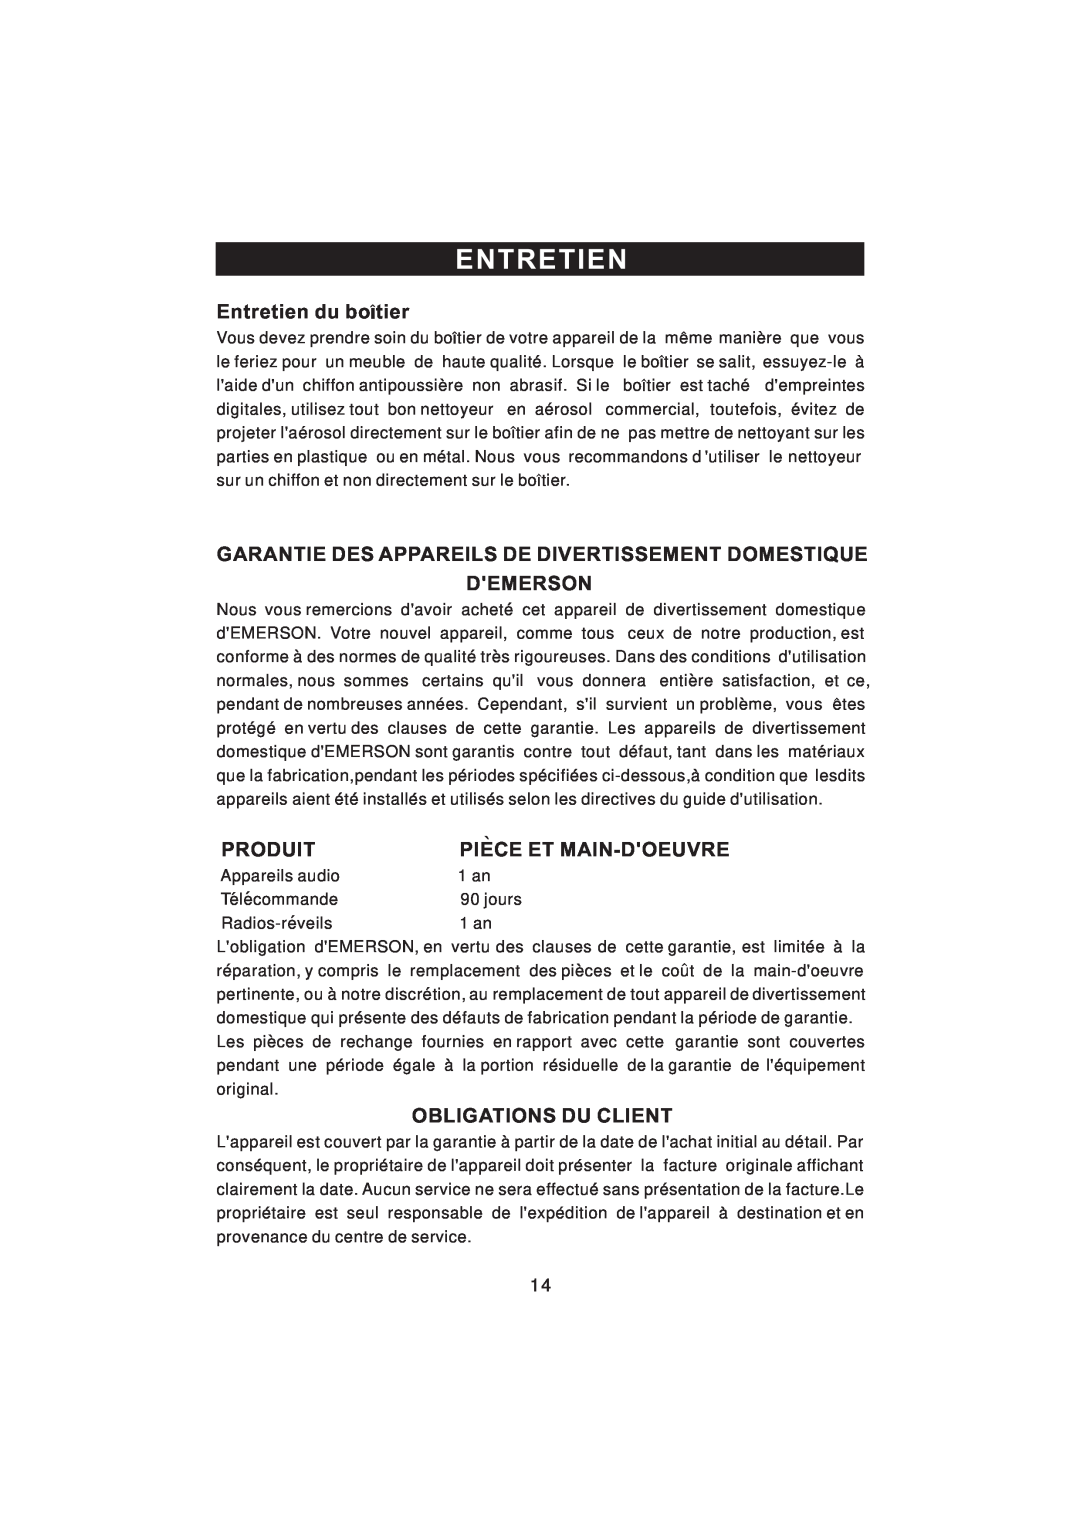 Emerson NR101TTC owner manual Entretien du botier, Demerson, Produit, Piece Et Main-Doeuvre, Obligations Du Client 